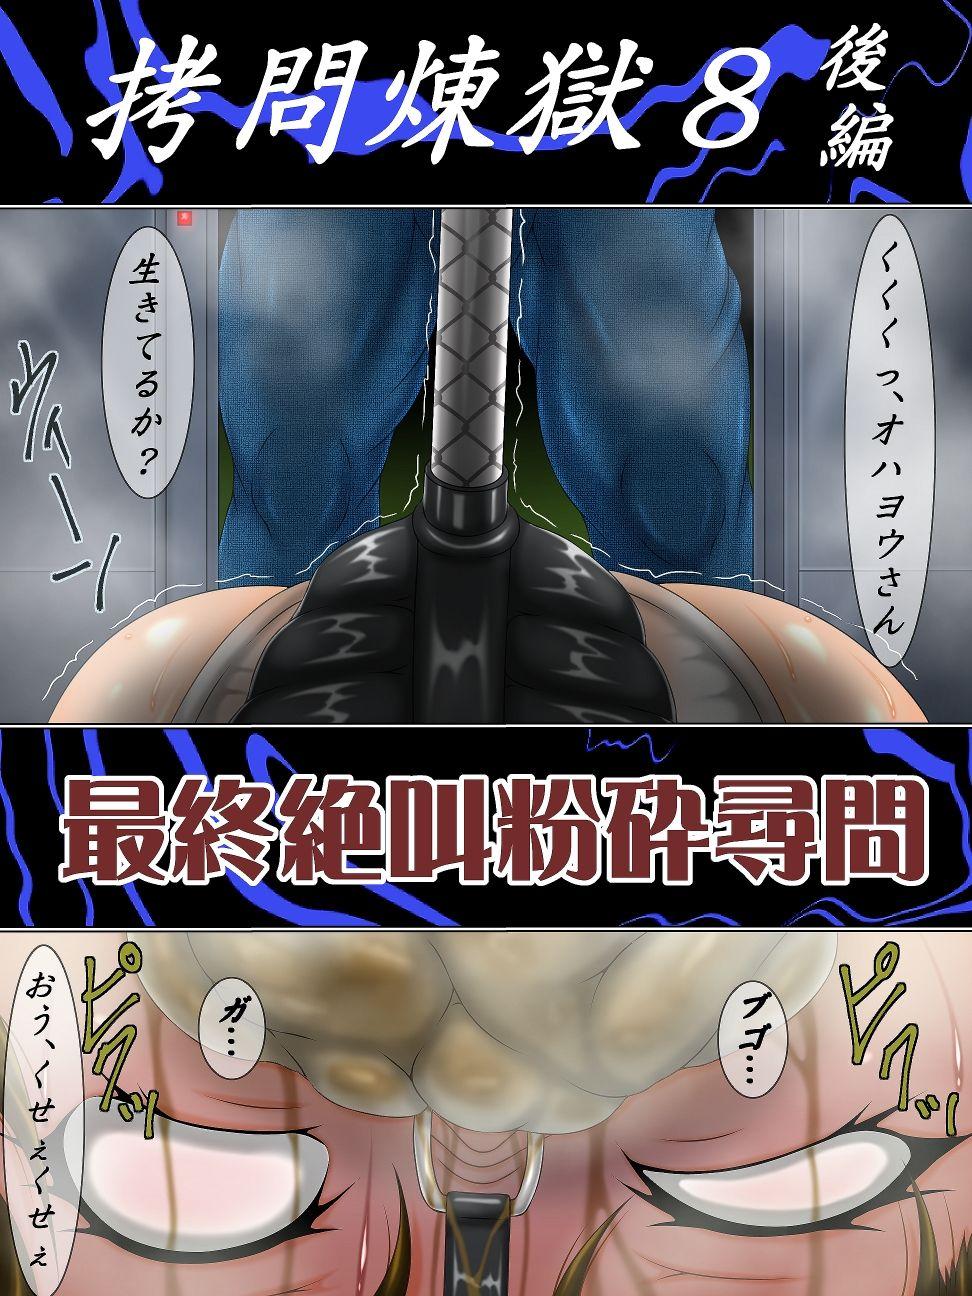 Hardsex Gōmon rengoku 8 kōhen saishū zekkyō funsai jinmon - Final fantasy vii Amature - Page 2